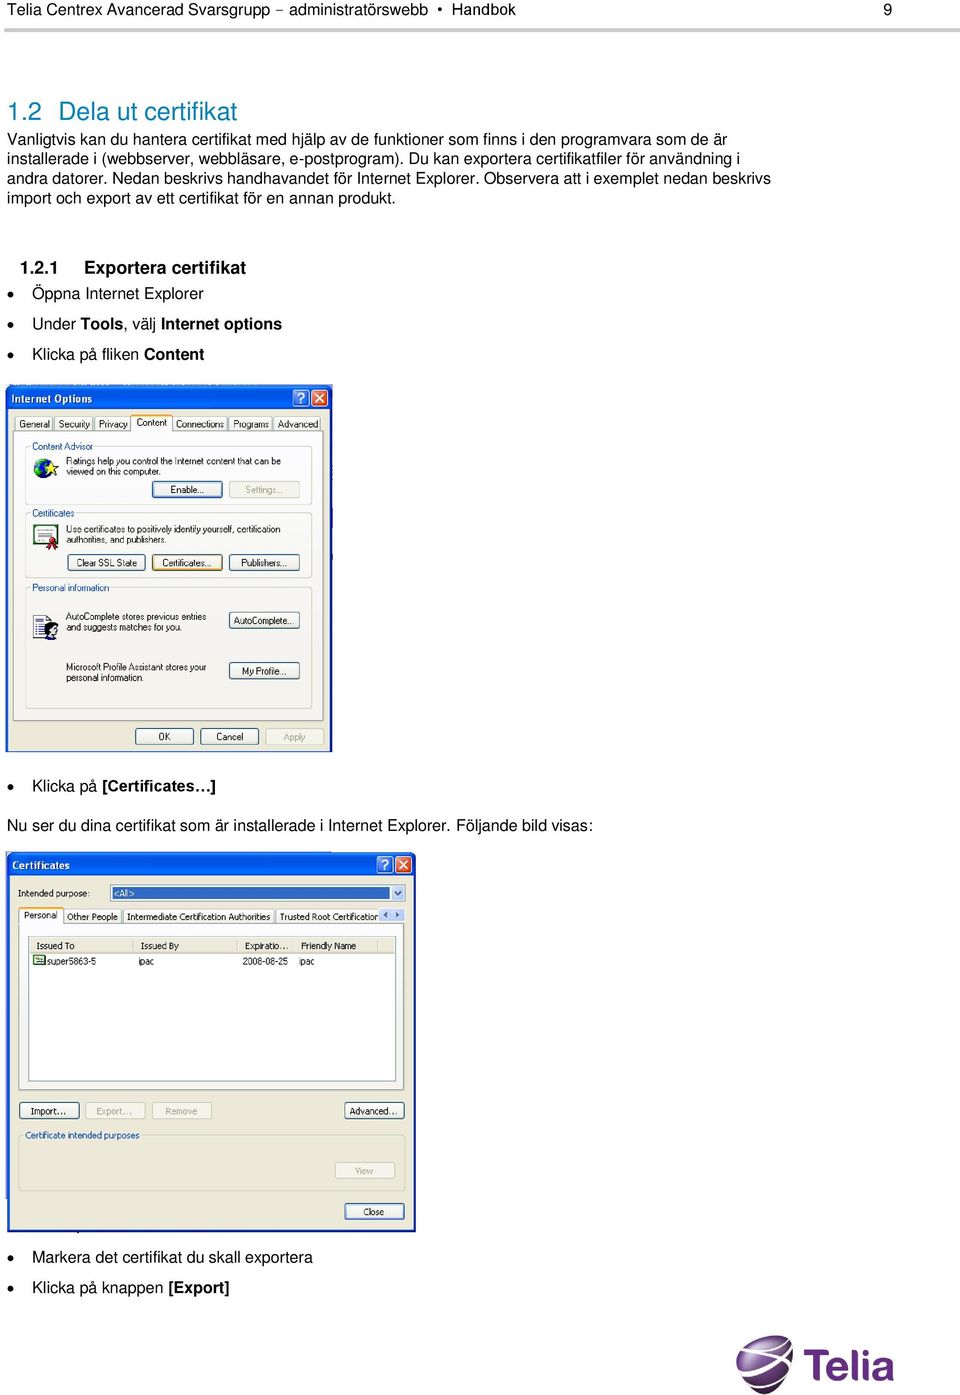 Du kan exportera certifikatfiler för användning i andra datorer. Nedan beskrivs handhavandet för Internet Explorer.